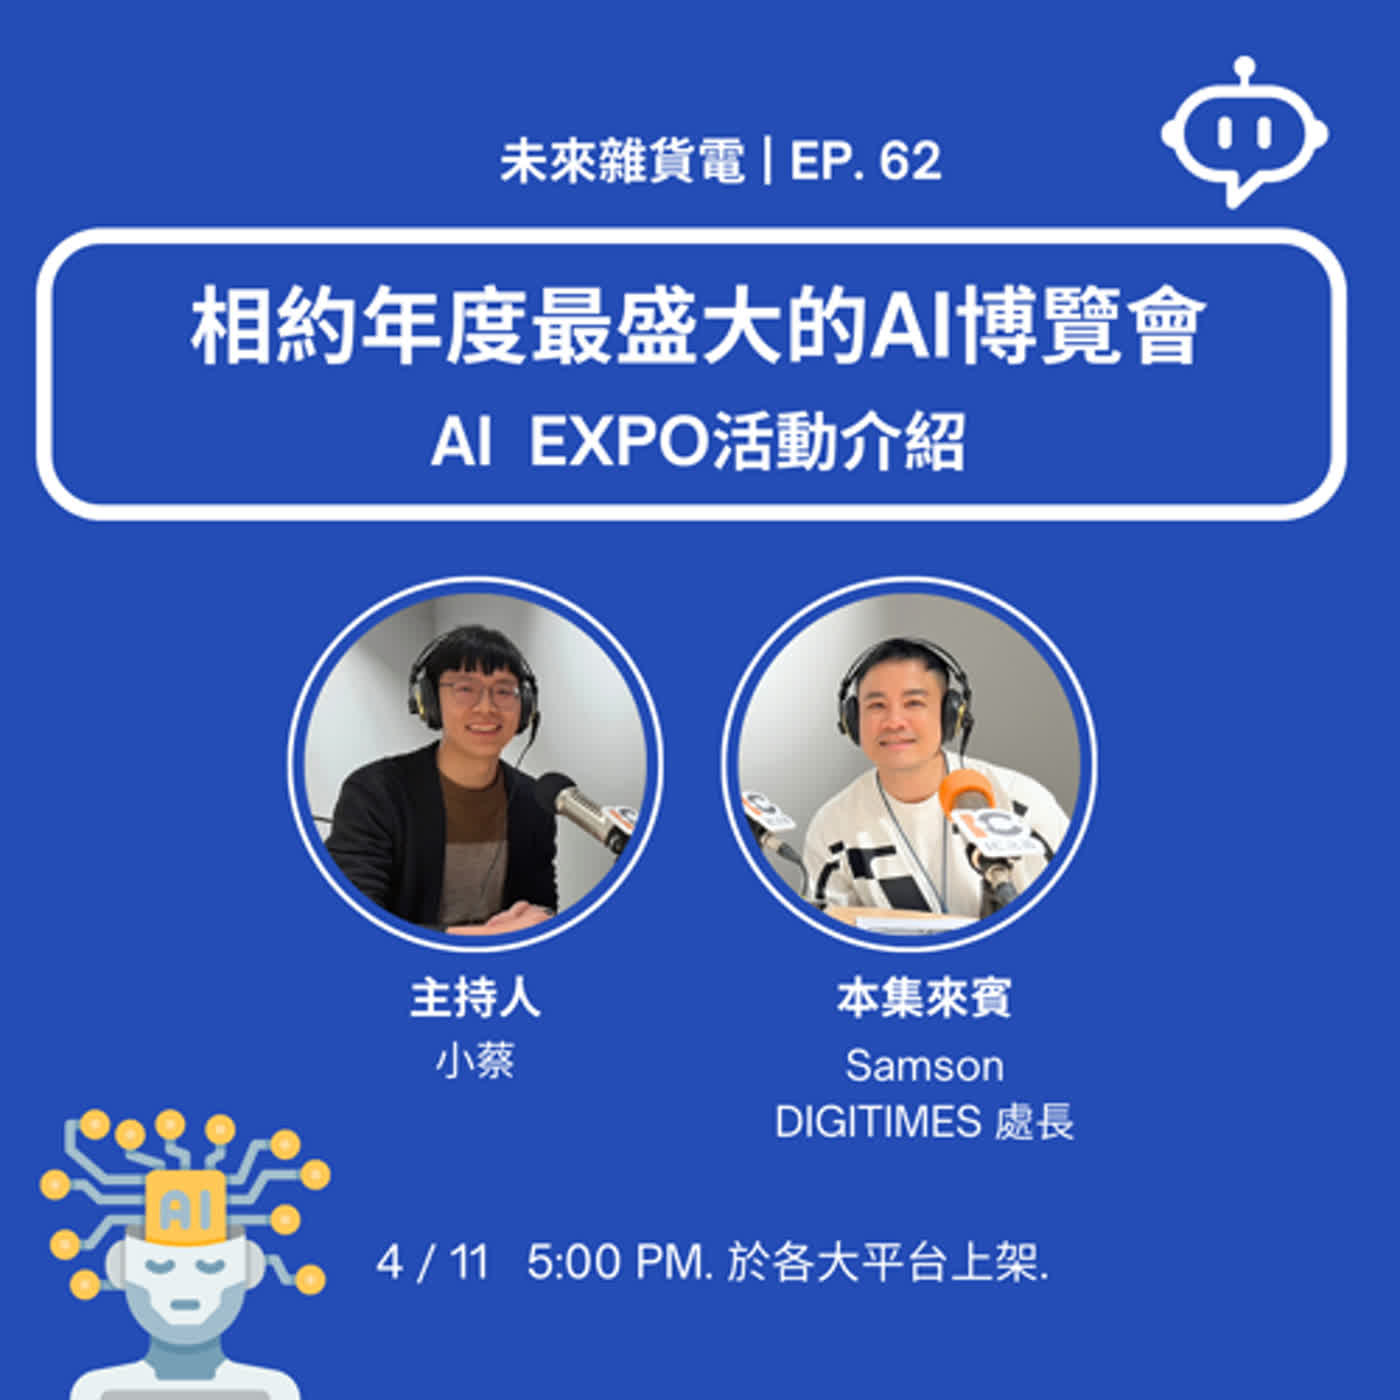 EP62 | 相約年度最盛大的AI博覽會 | AI EXPO活動介紹 / 專訪DIGITIMES Samson處長 (中)